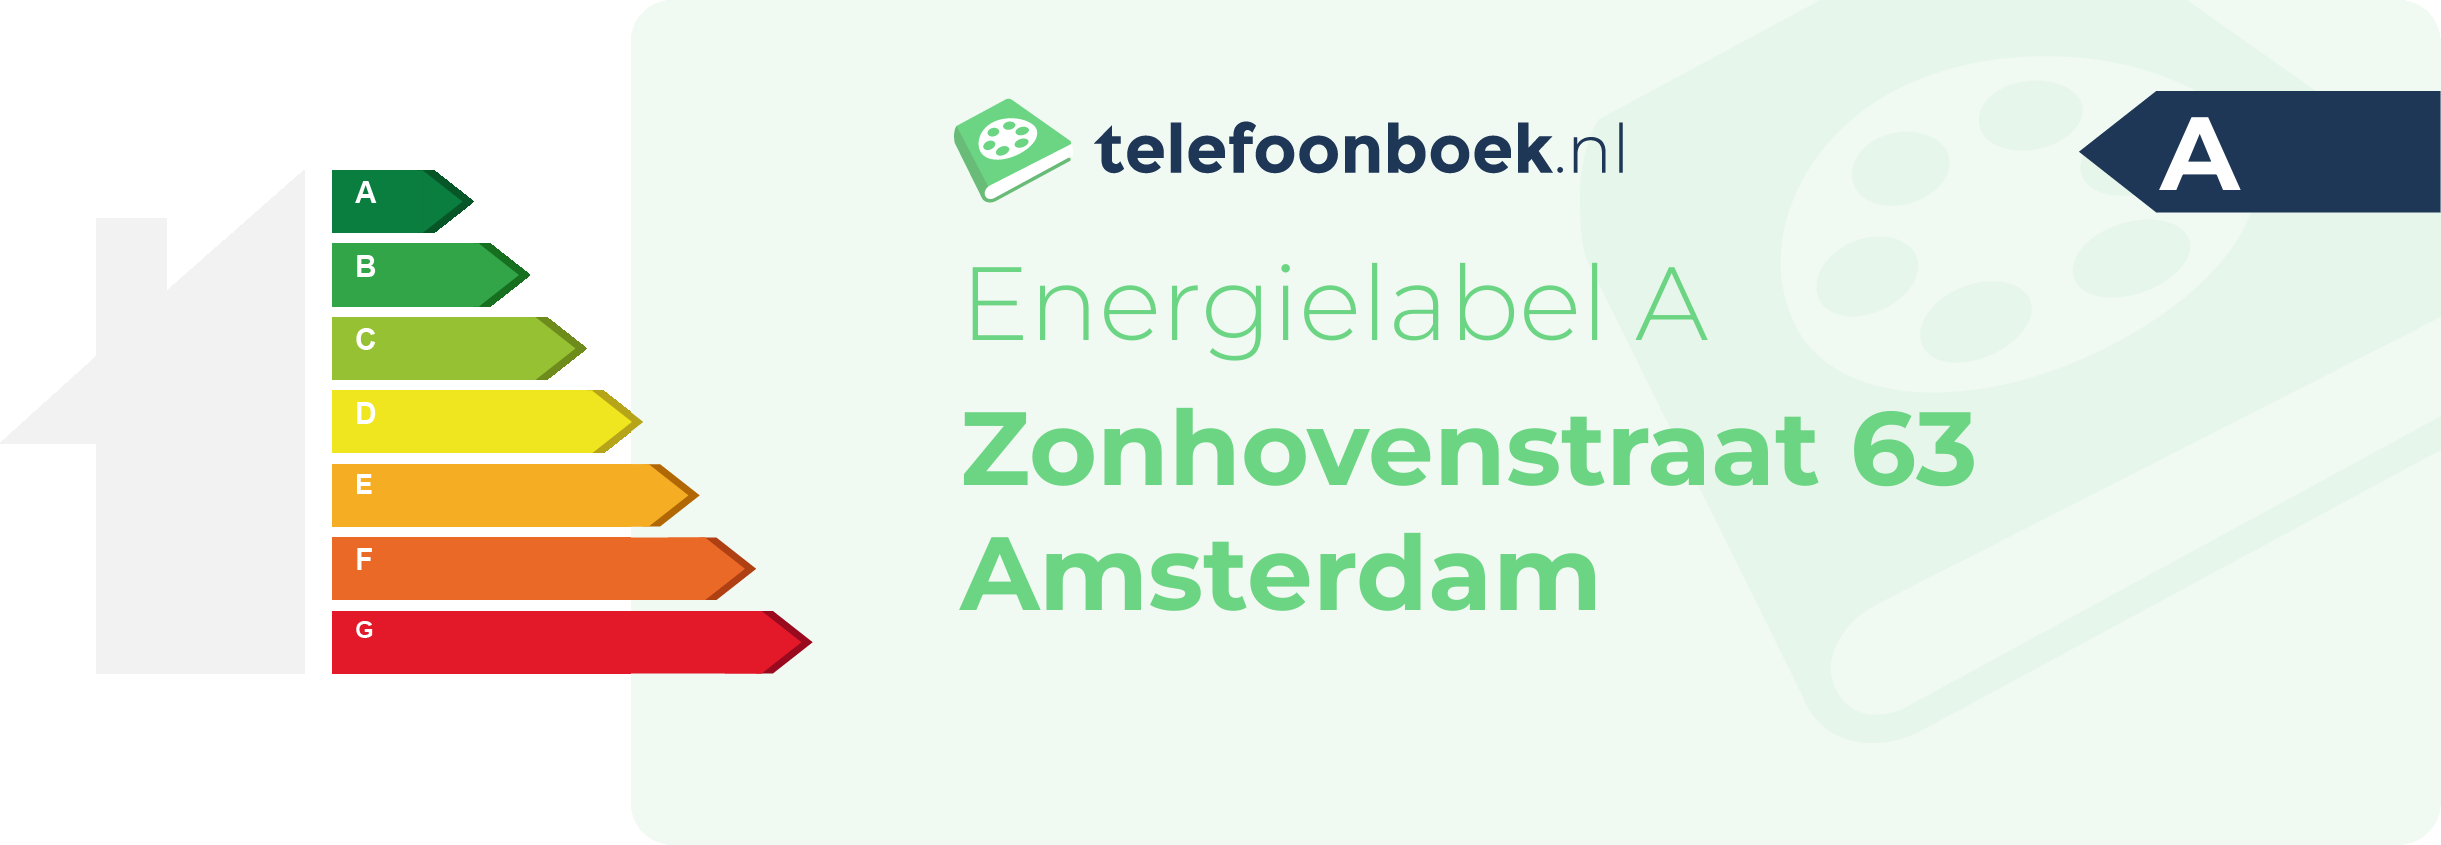 Energielabel Zonhovenstraat 63 Amsterdam